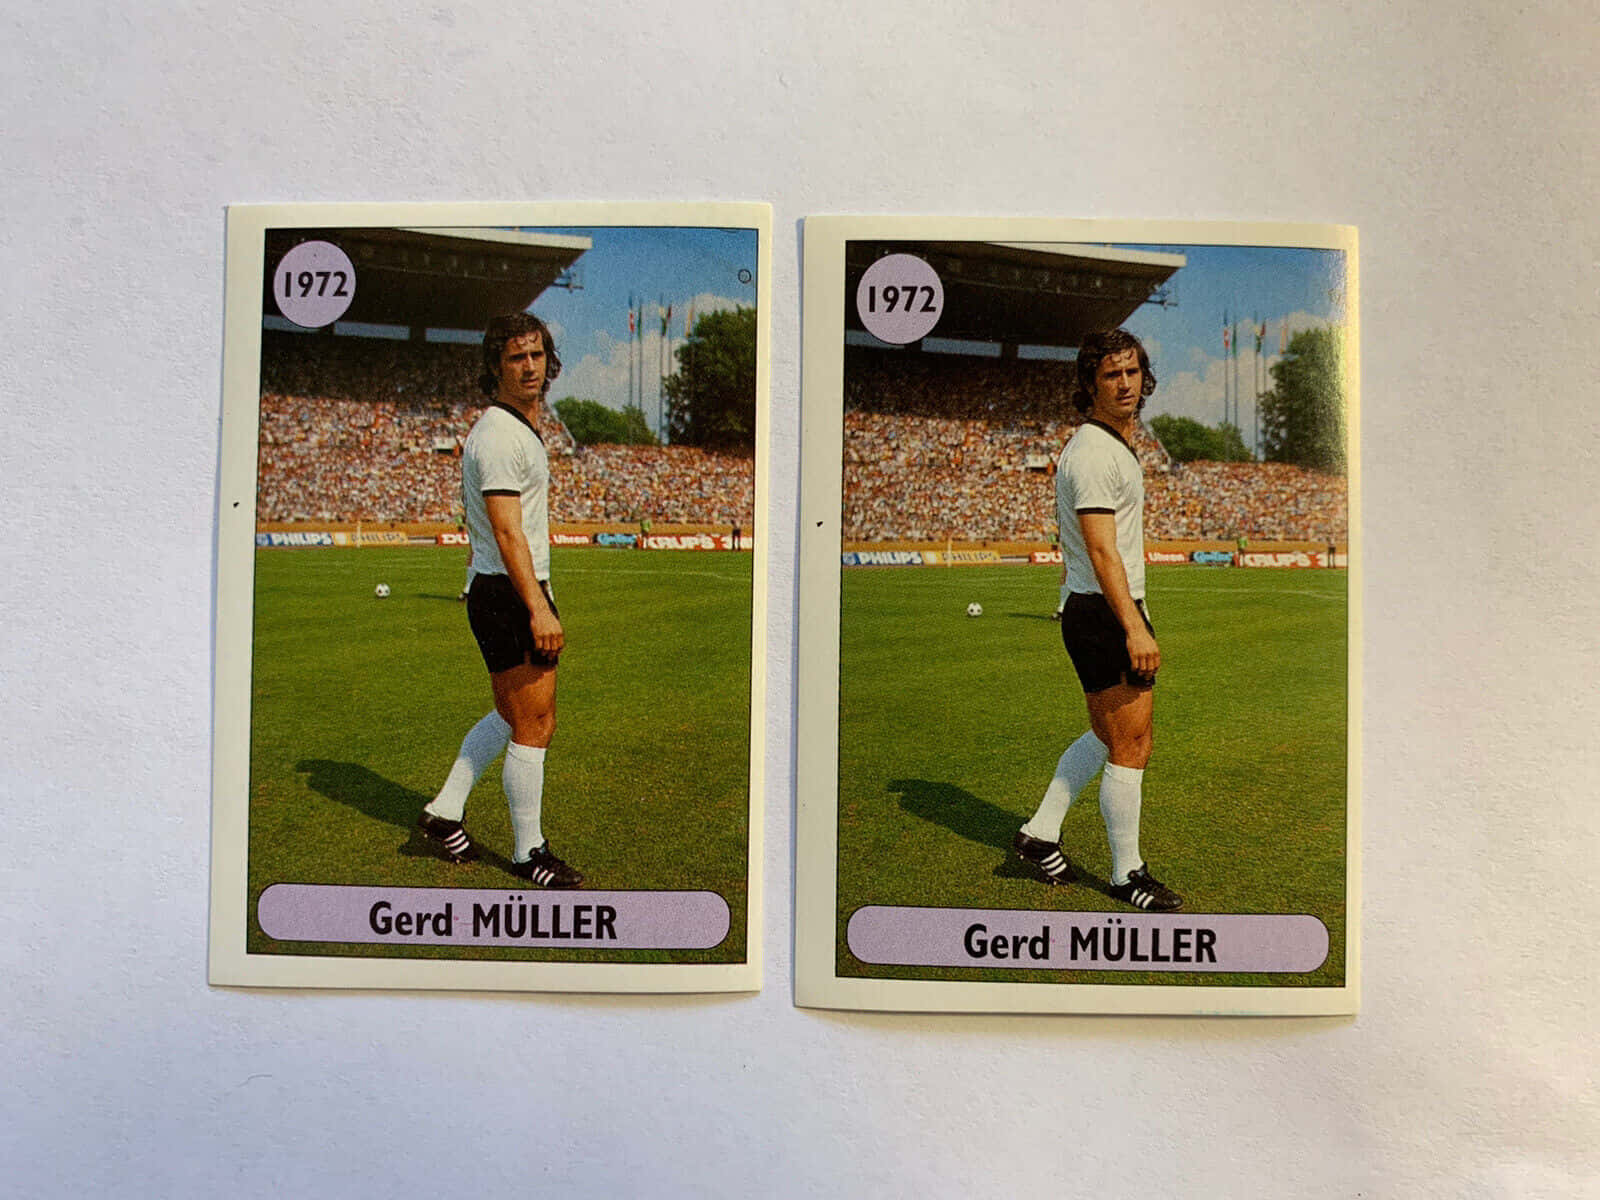 Fotbollsspelarengerd Muller Från 1972 På Ett Handelskort. Wallpaper